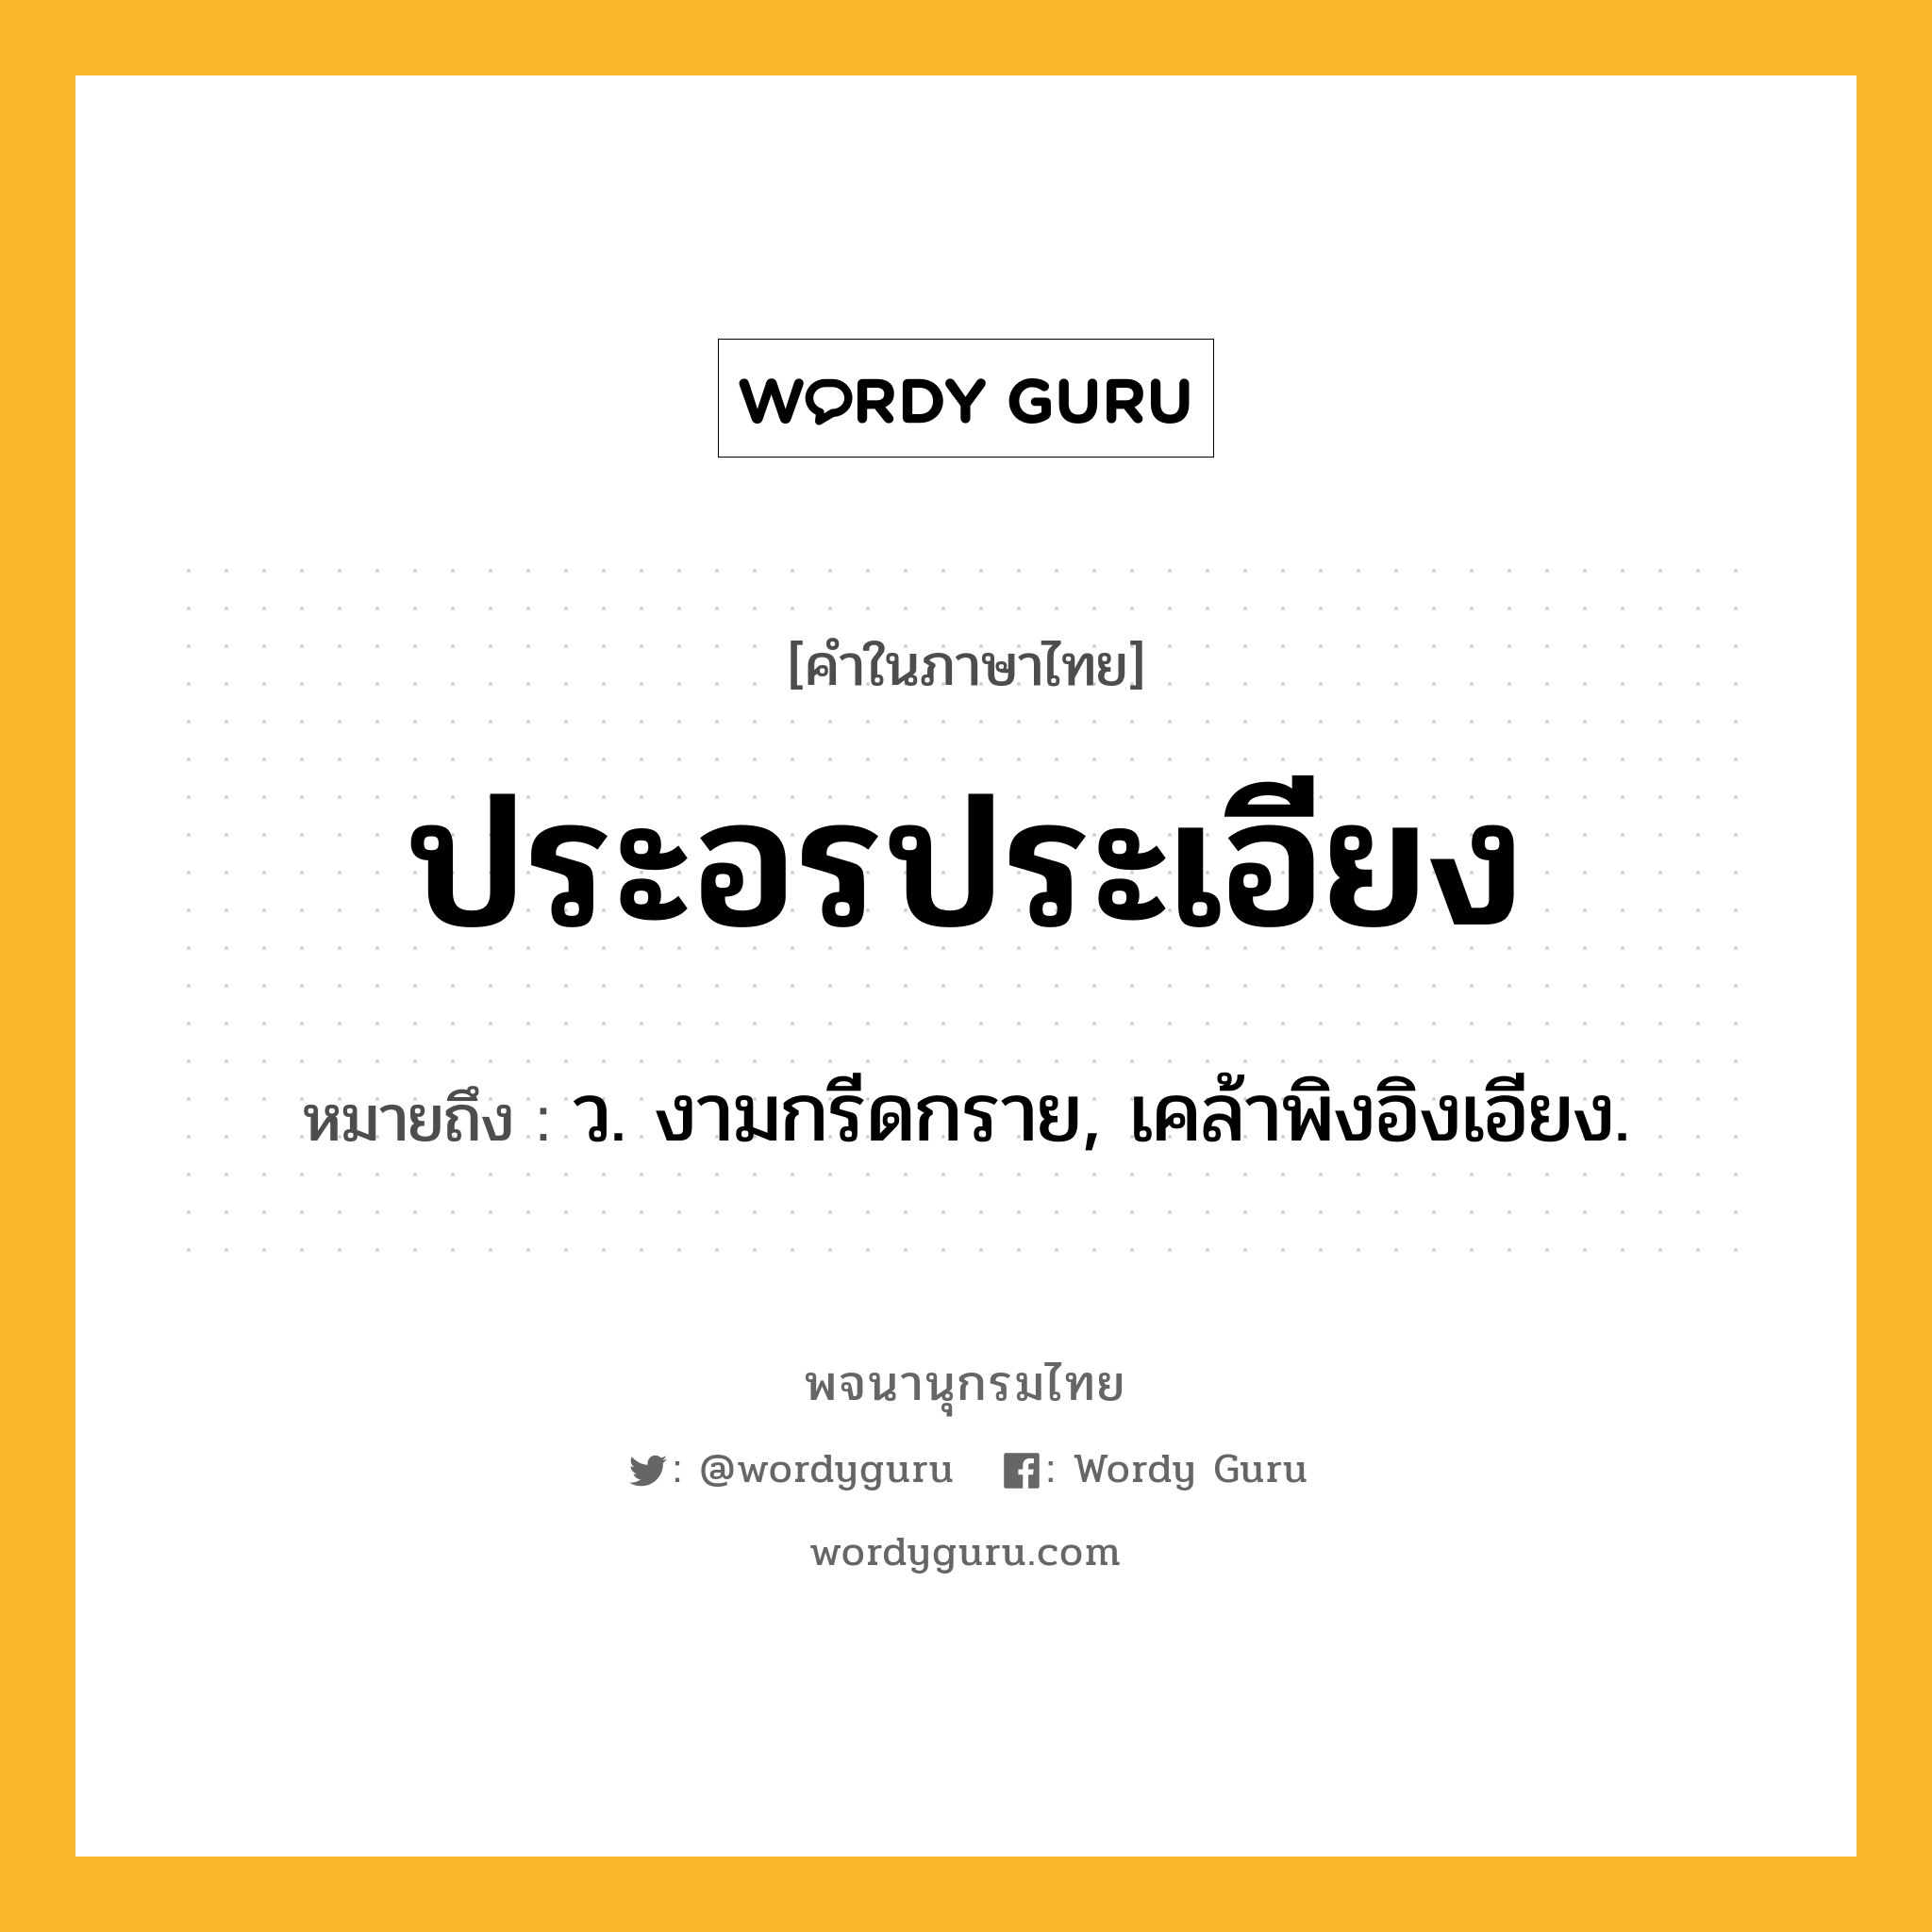 ประอรประเอียง ความหมาย หมายถึงอะไร?, คำในภาษาไทย ประอรประเอียง หมายถึง ว. งามกรีดกราย, เคล้าพิงอิงเอียง.